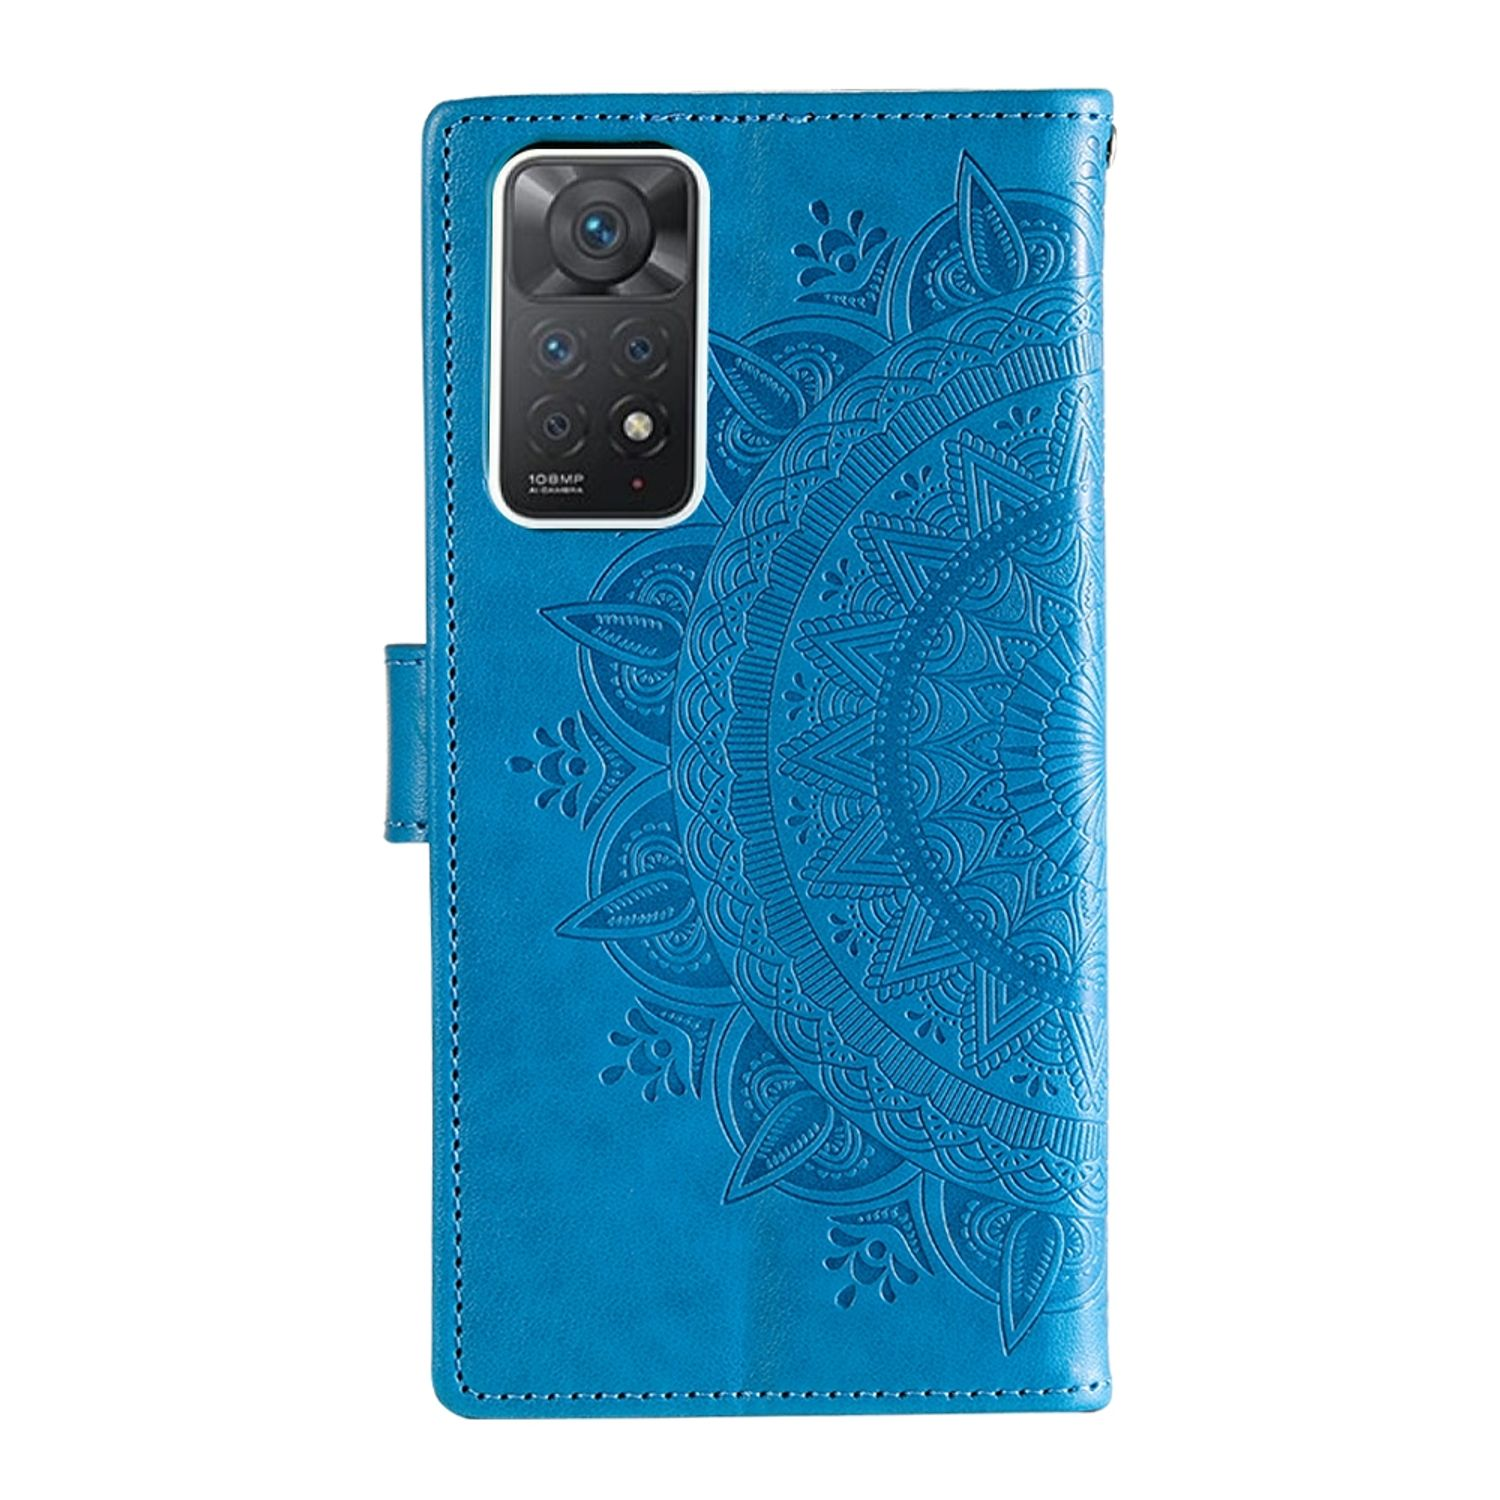 5G, Book 11 / 11 KÖNIG Redmi Pro Pro+ Note Case, Note DESIGN Blau Xiaomi, Bookcover,